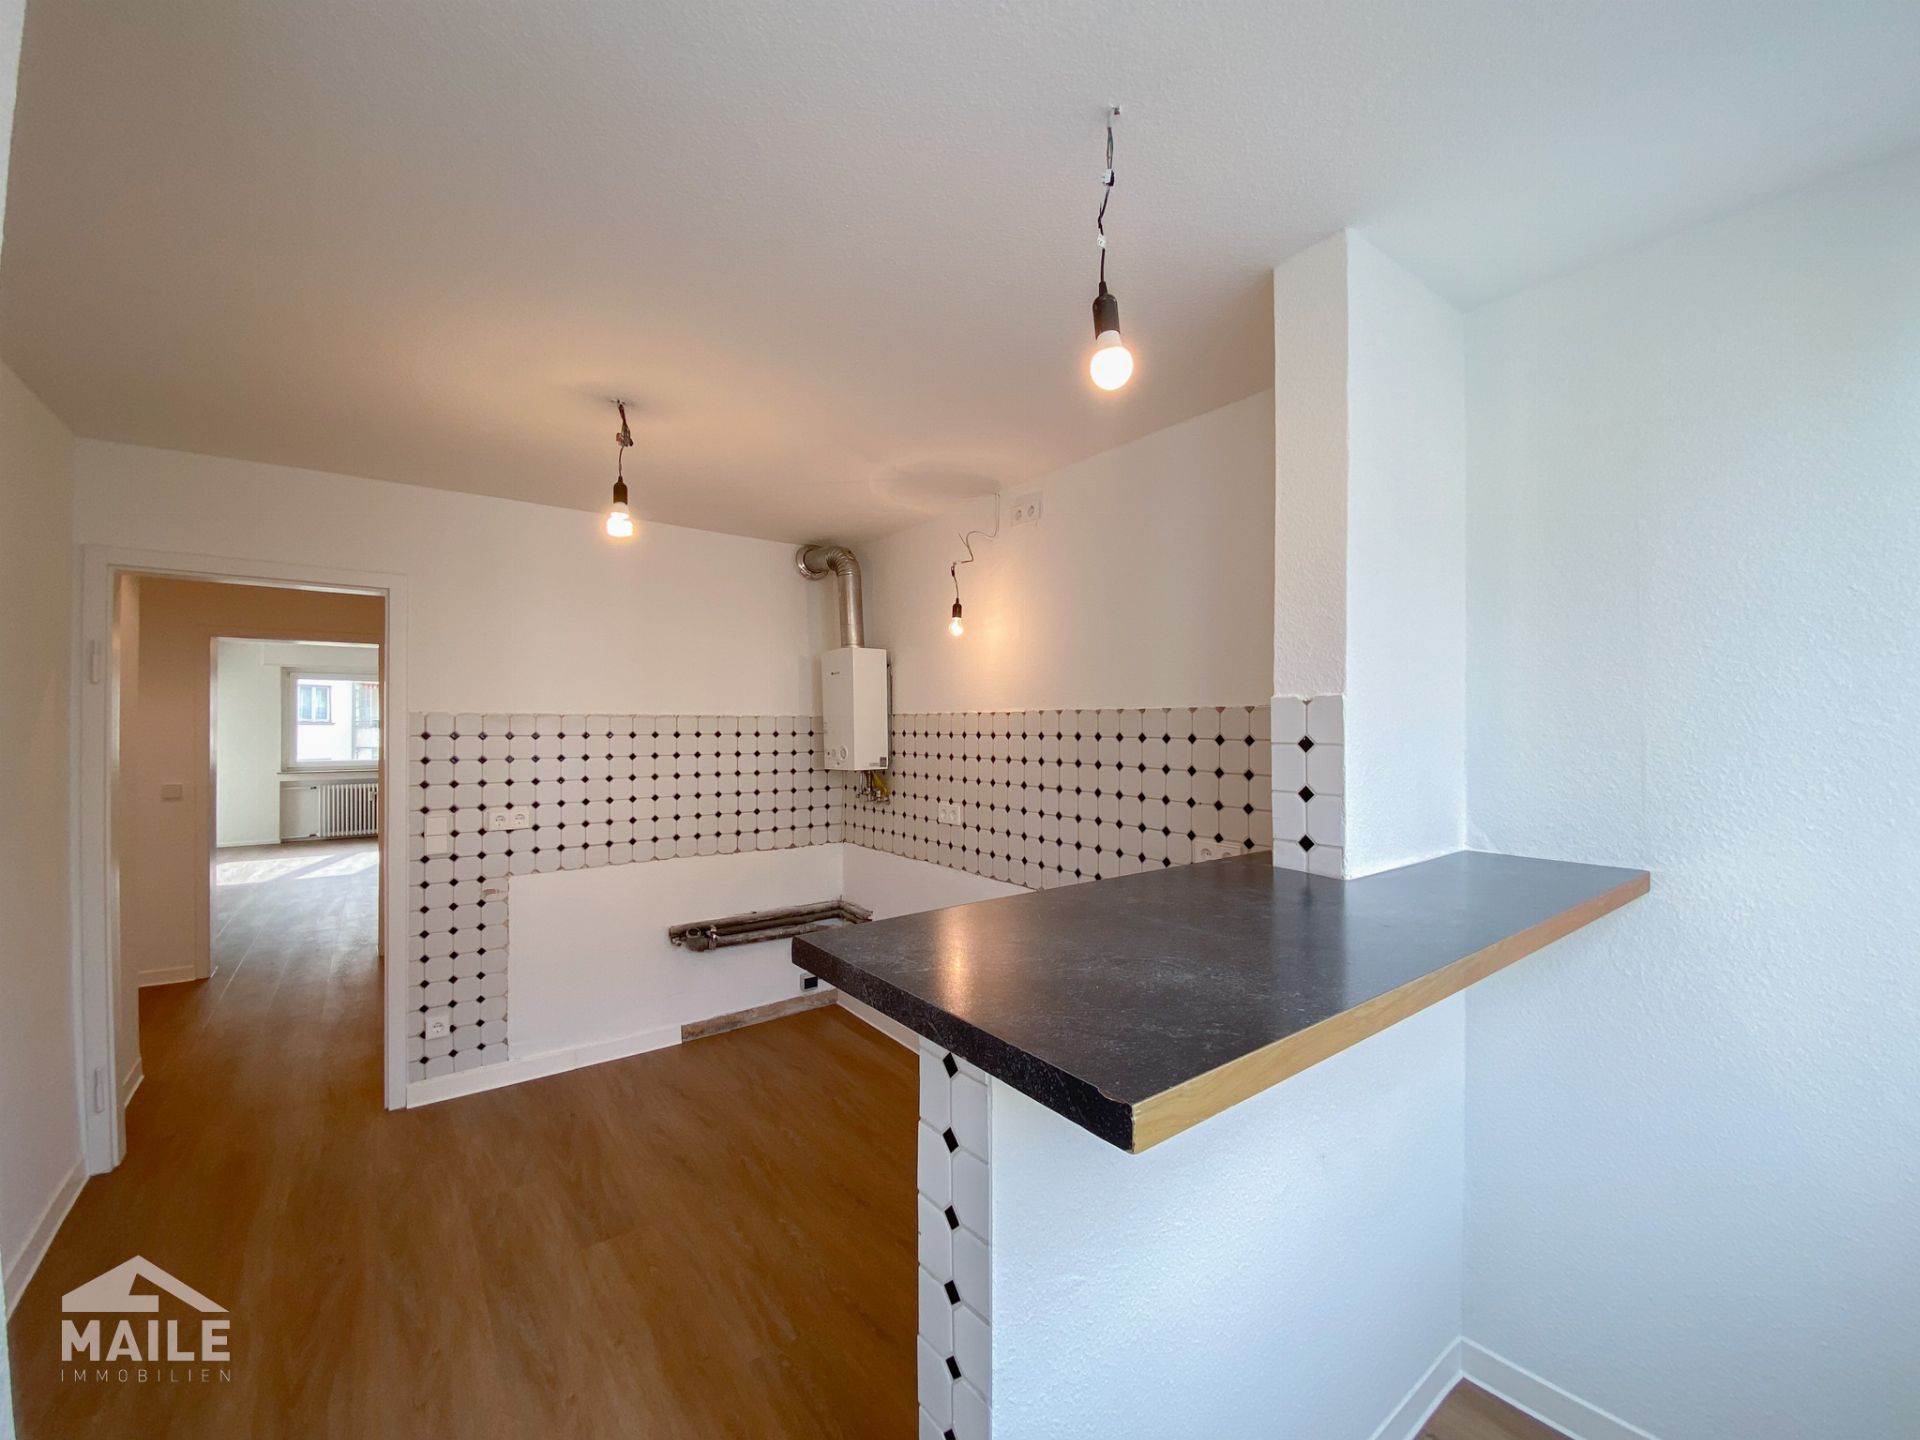 Frisch renovierte 4-Zimmer-Wohnung mit sonnigem Balkon, großem Hobbyraum und Garage! - Küche